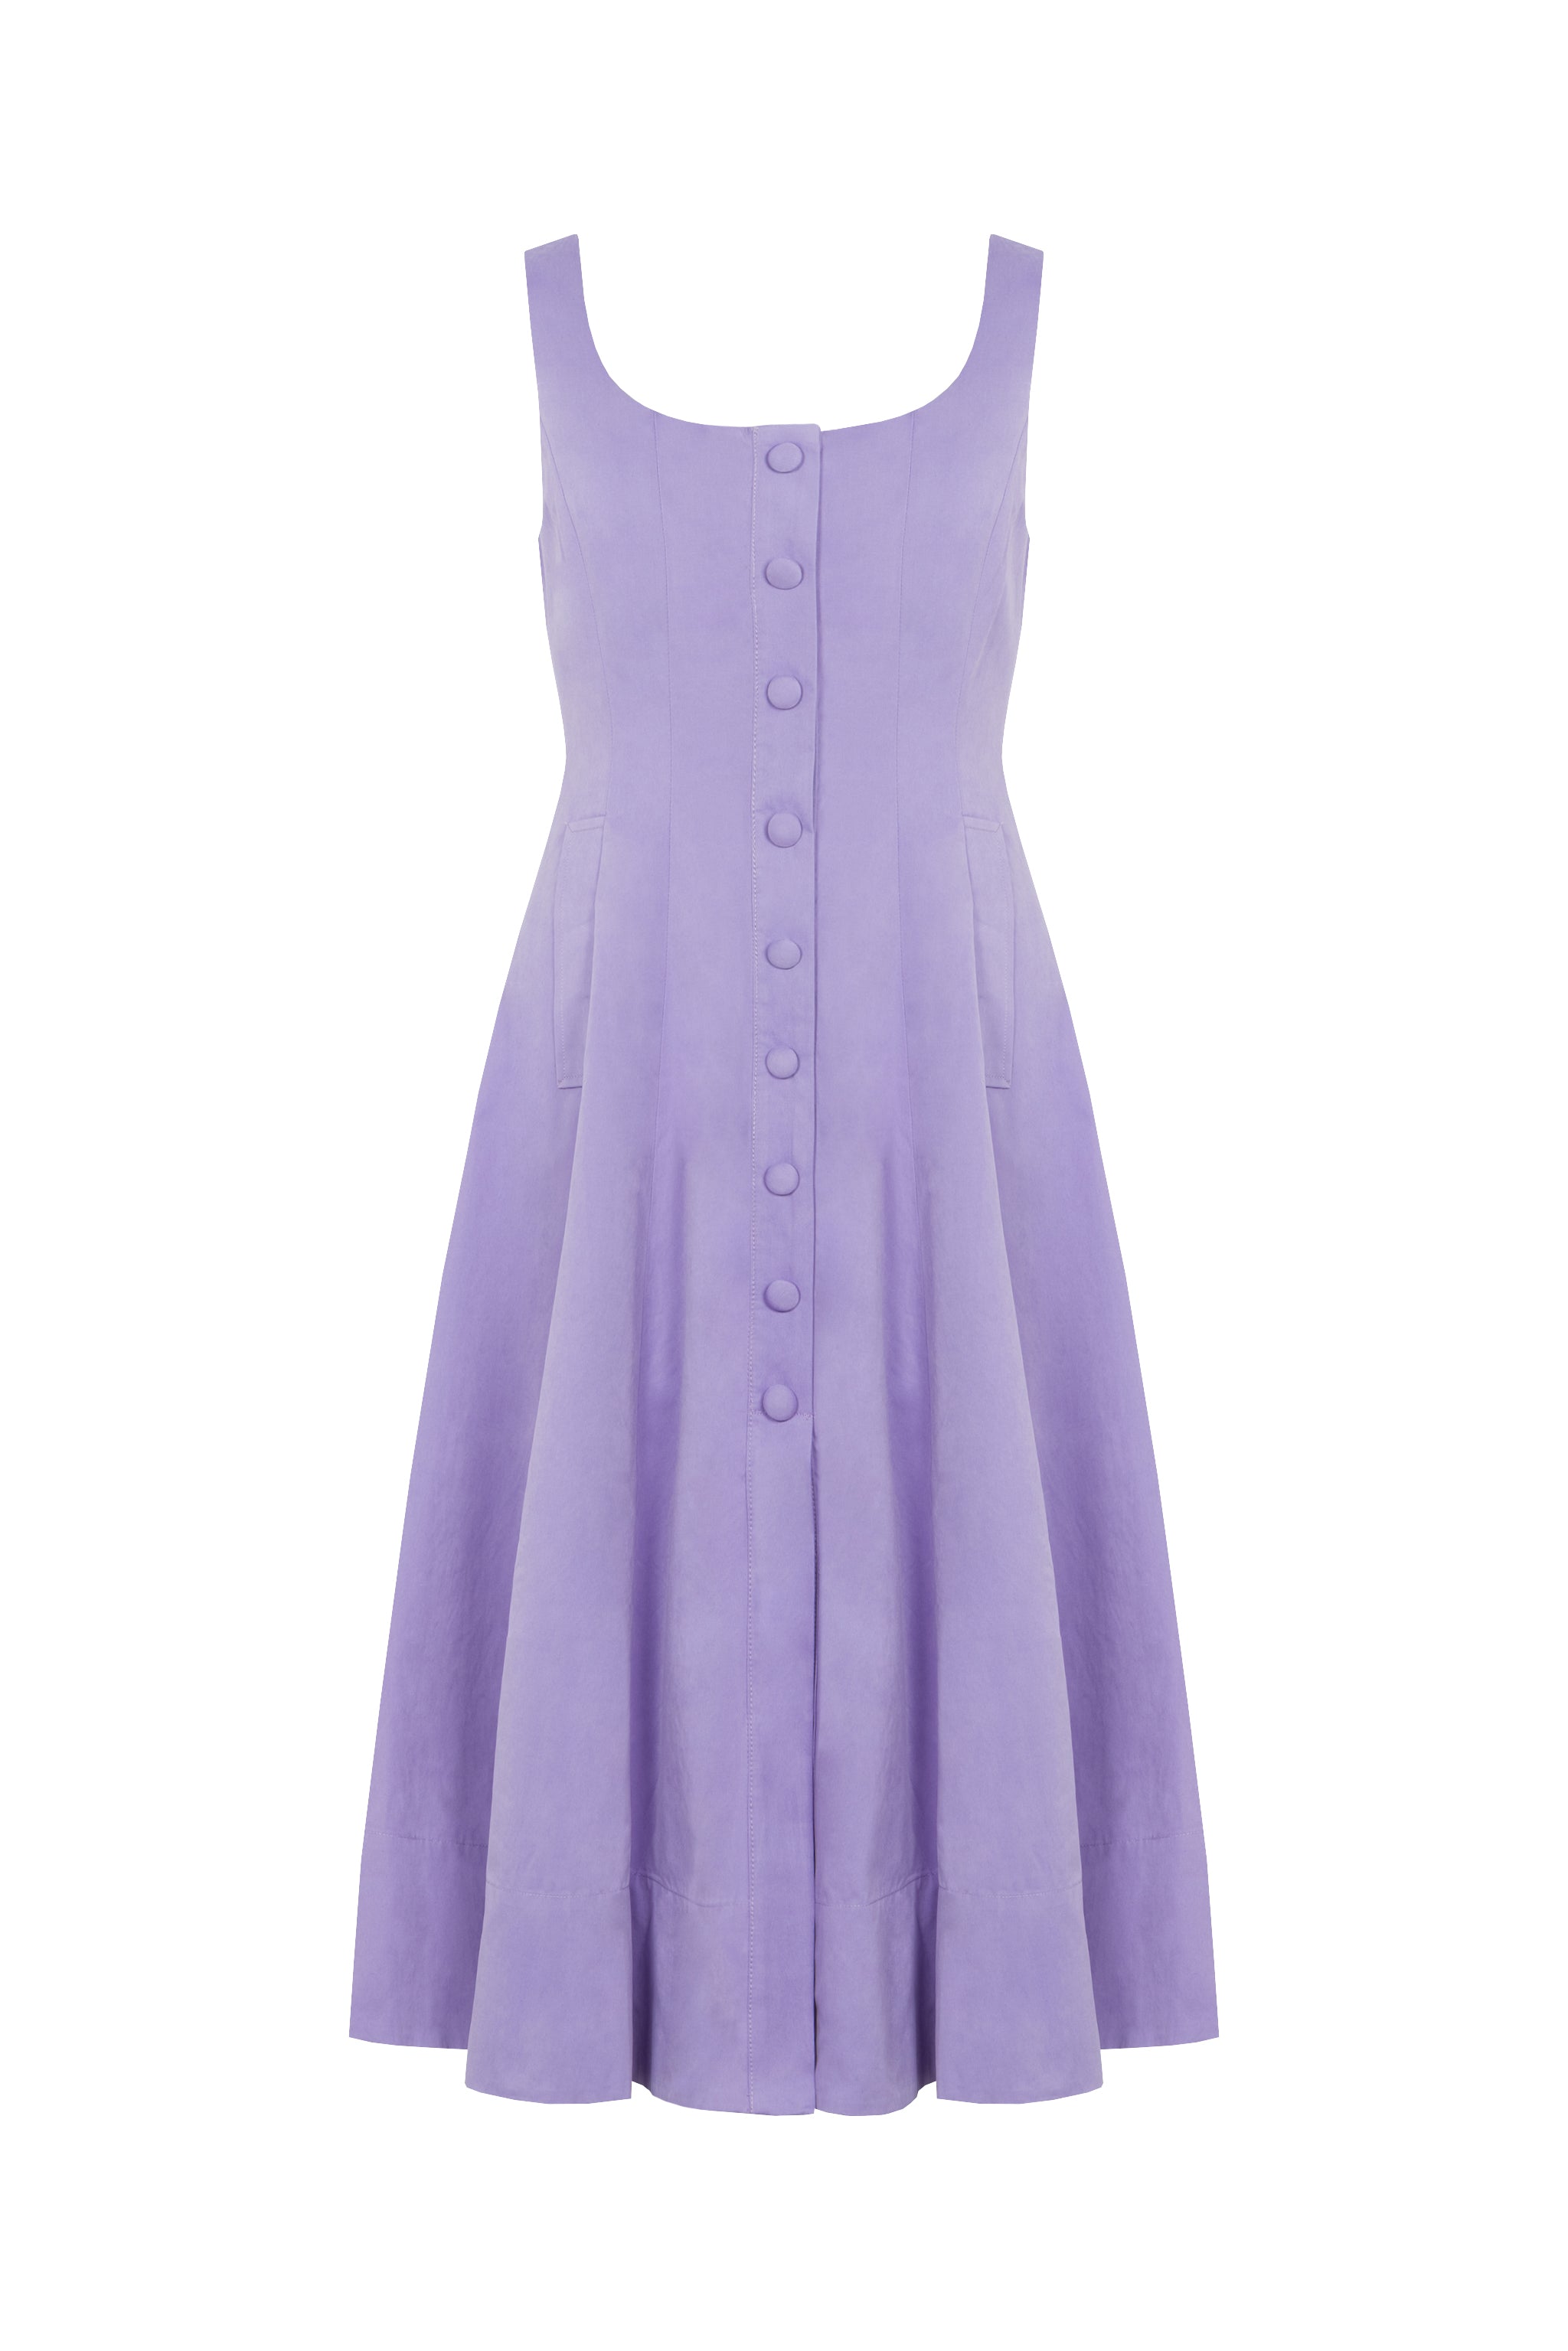 Boat Neck Dress (Violet)